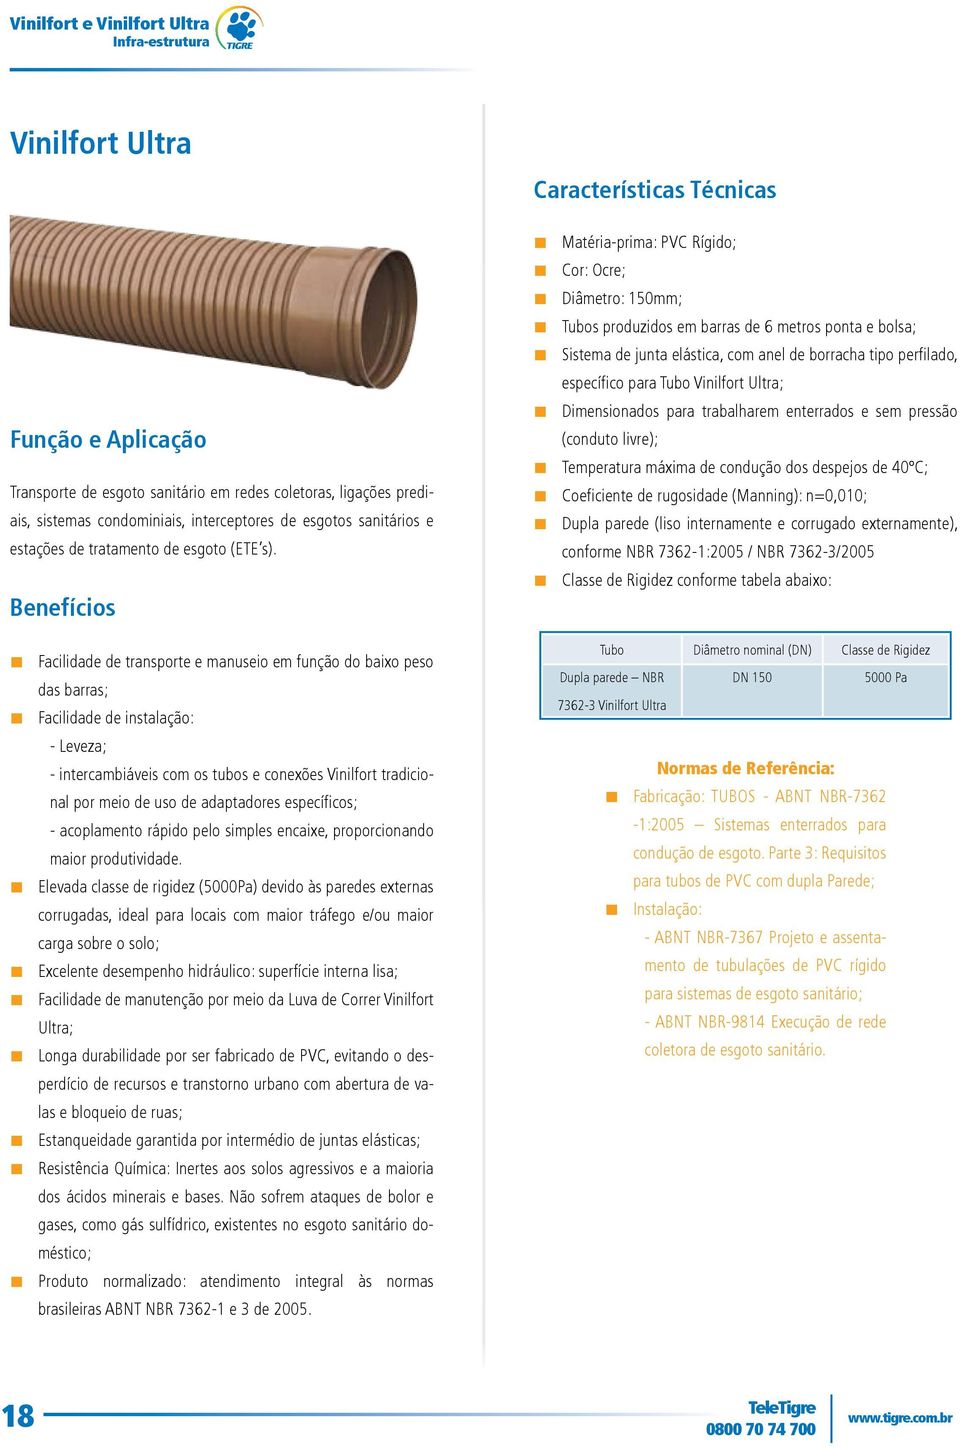 Benefícios Matéria-prima: PVC Rígido; Cor: Ocre; iâmetro: 150mm; Tubos produzidos em barras de 6 metros ponta e bolsa; Sistema de junta elástica, com anel de borracha tipo perfilado, específico para